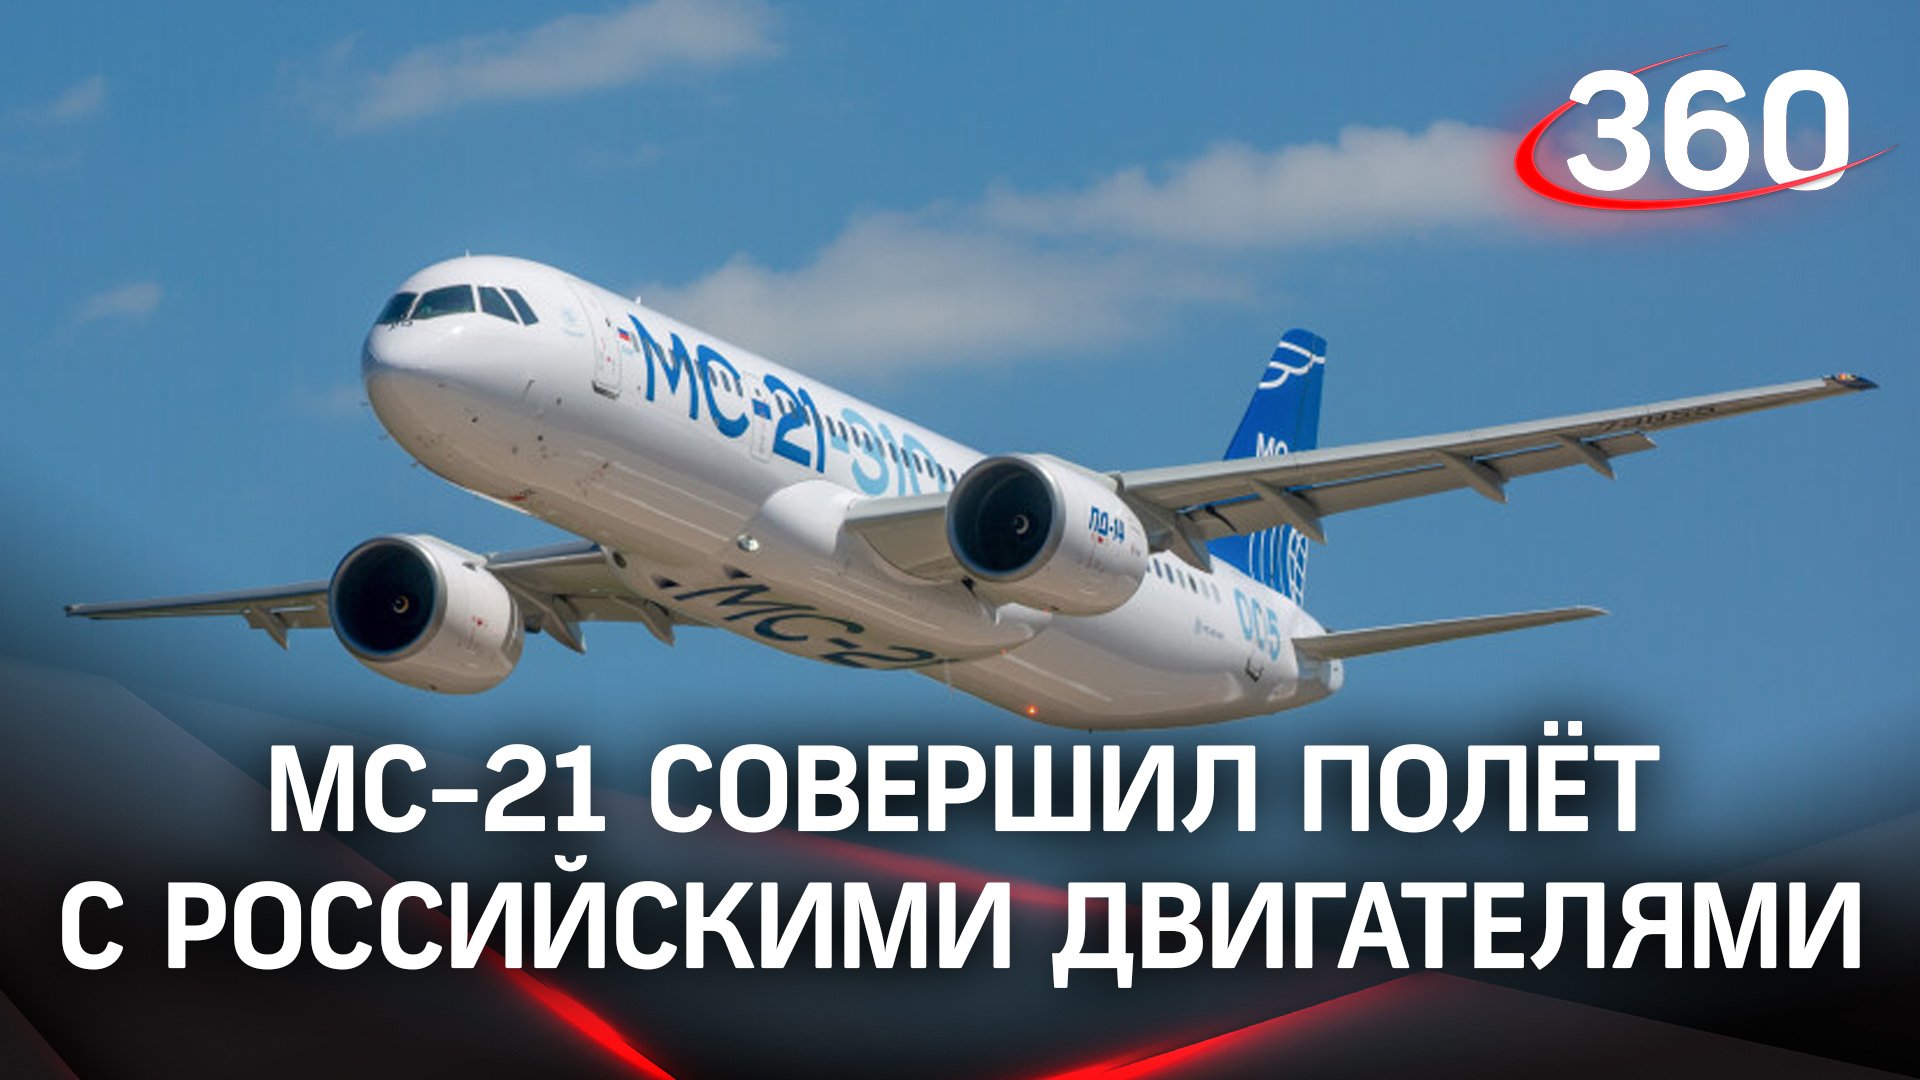 Второй авиалайнер МС-21 совершил полёт с российскими двигателями